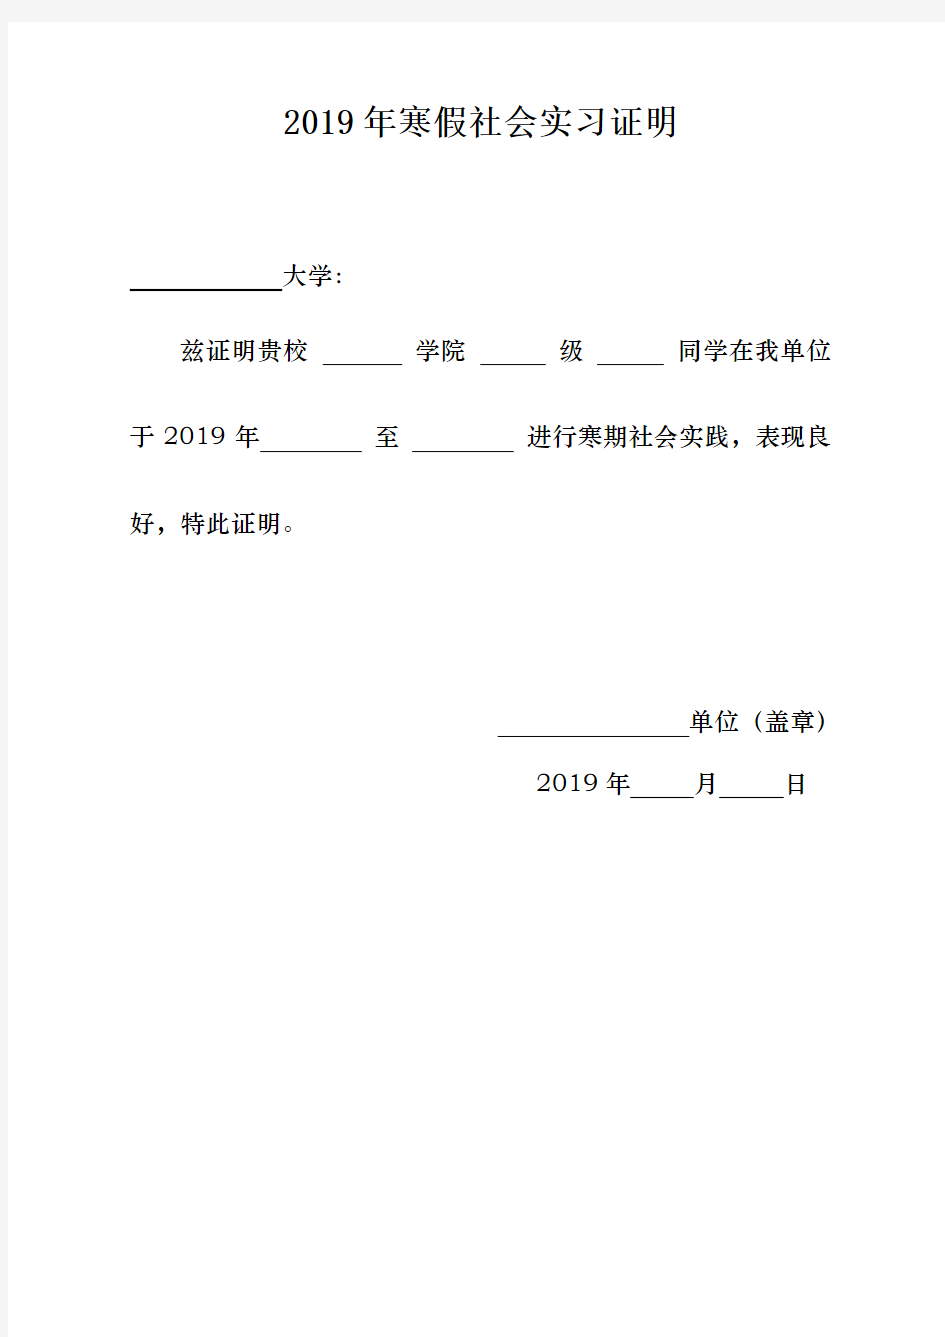 2019年大学生寒假社会实践证明模板(附表)